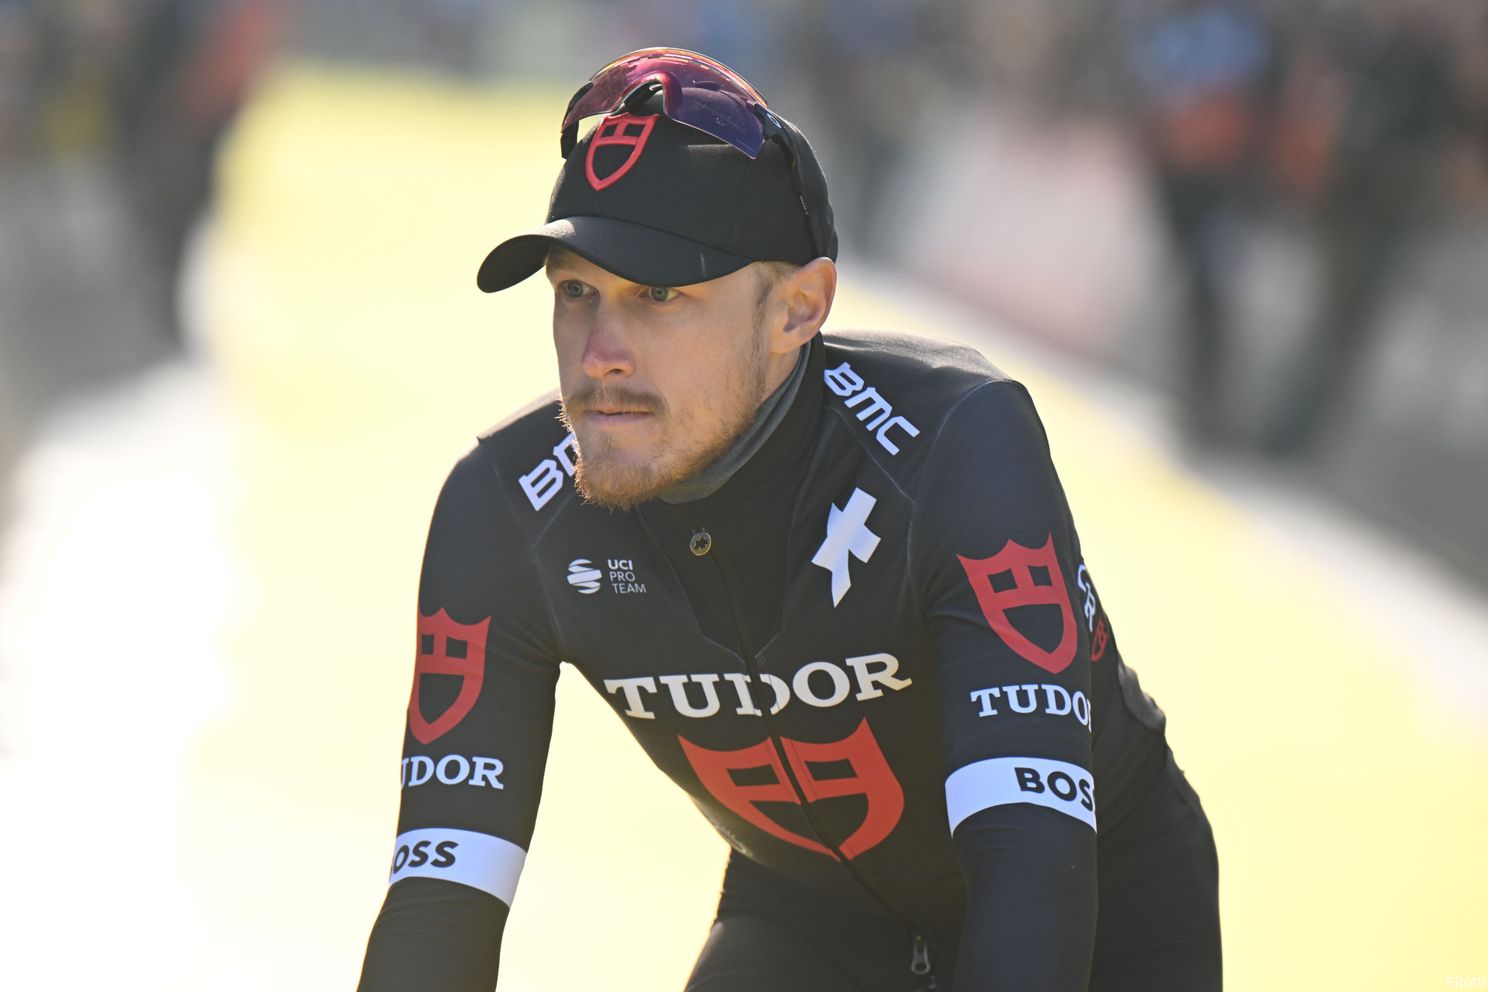 Tudor-project Cancellara verder in steigers richting Giro: 'veel complimenten binnen peloton' van Van Aert en co